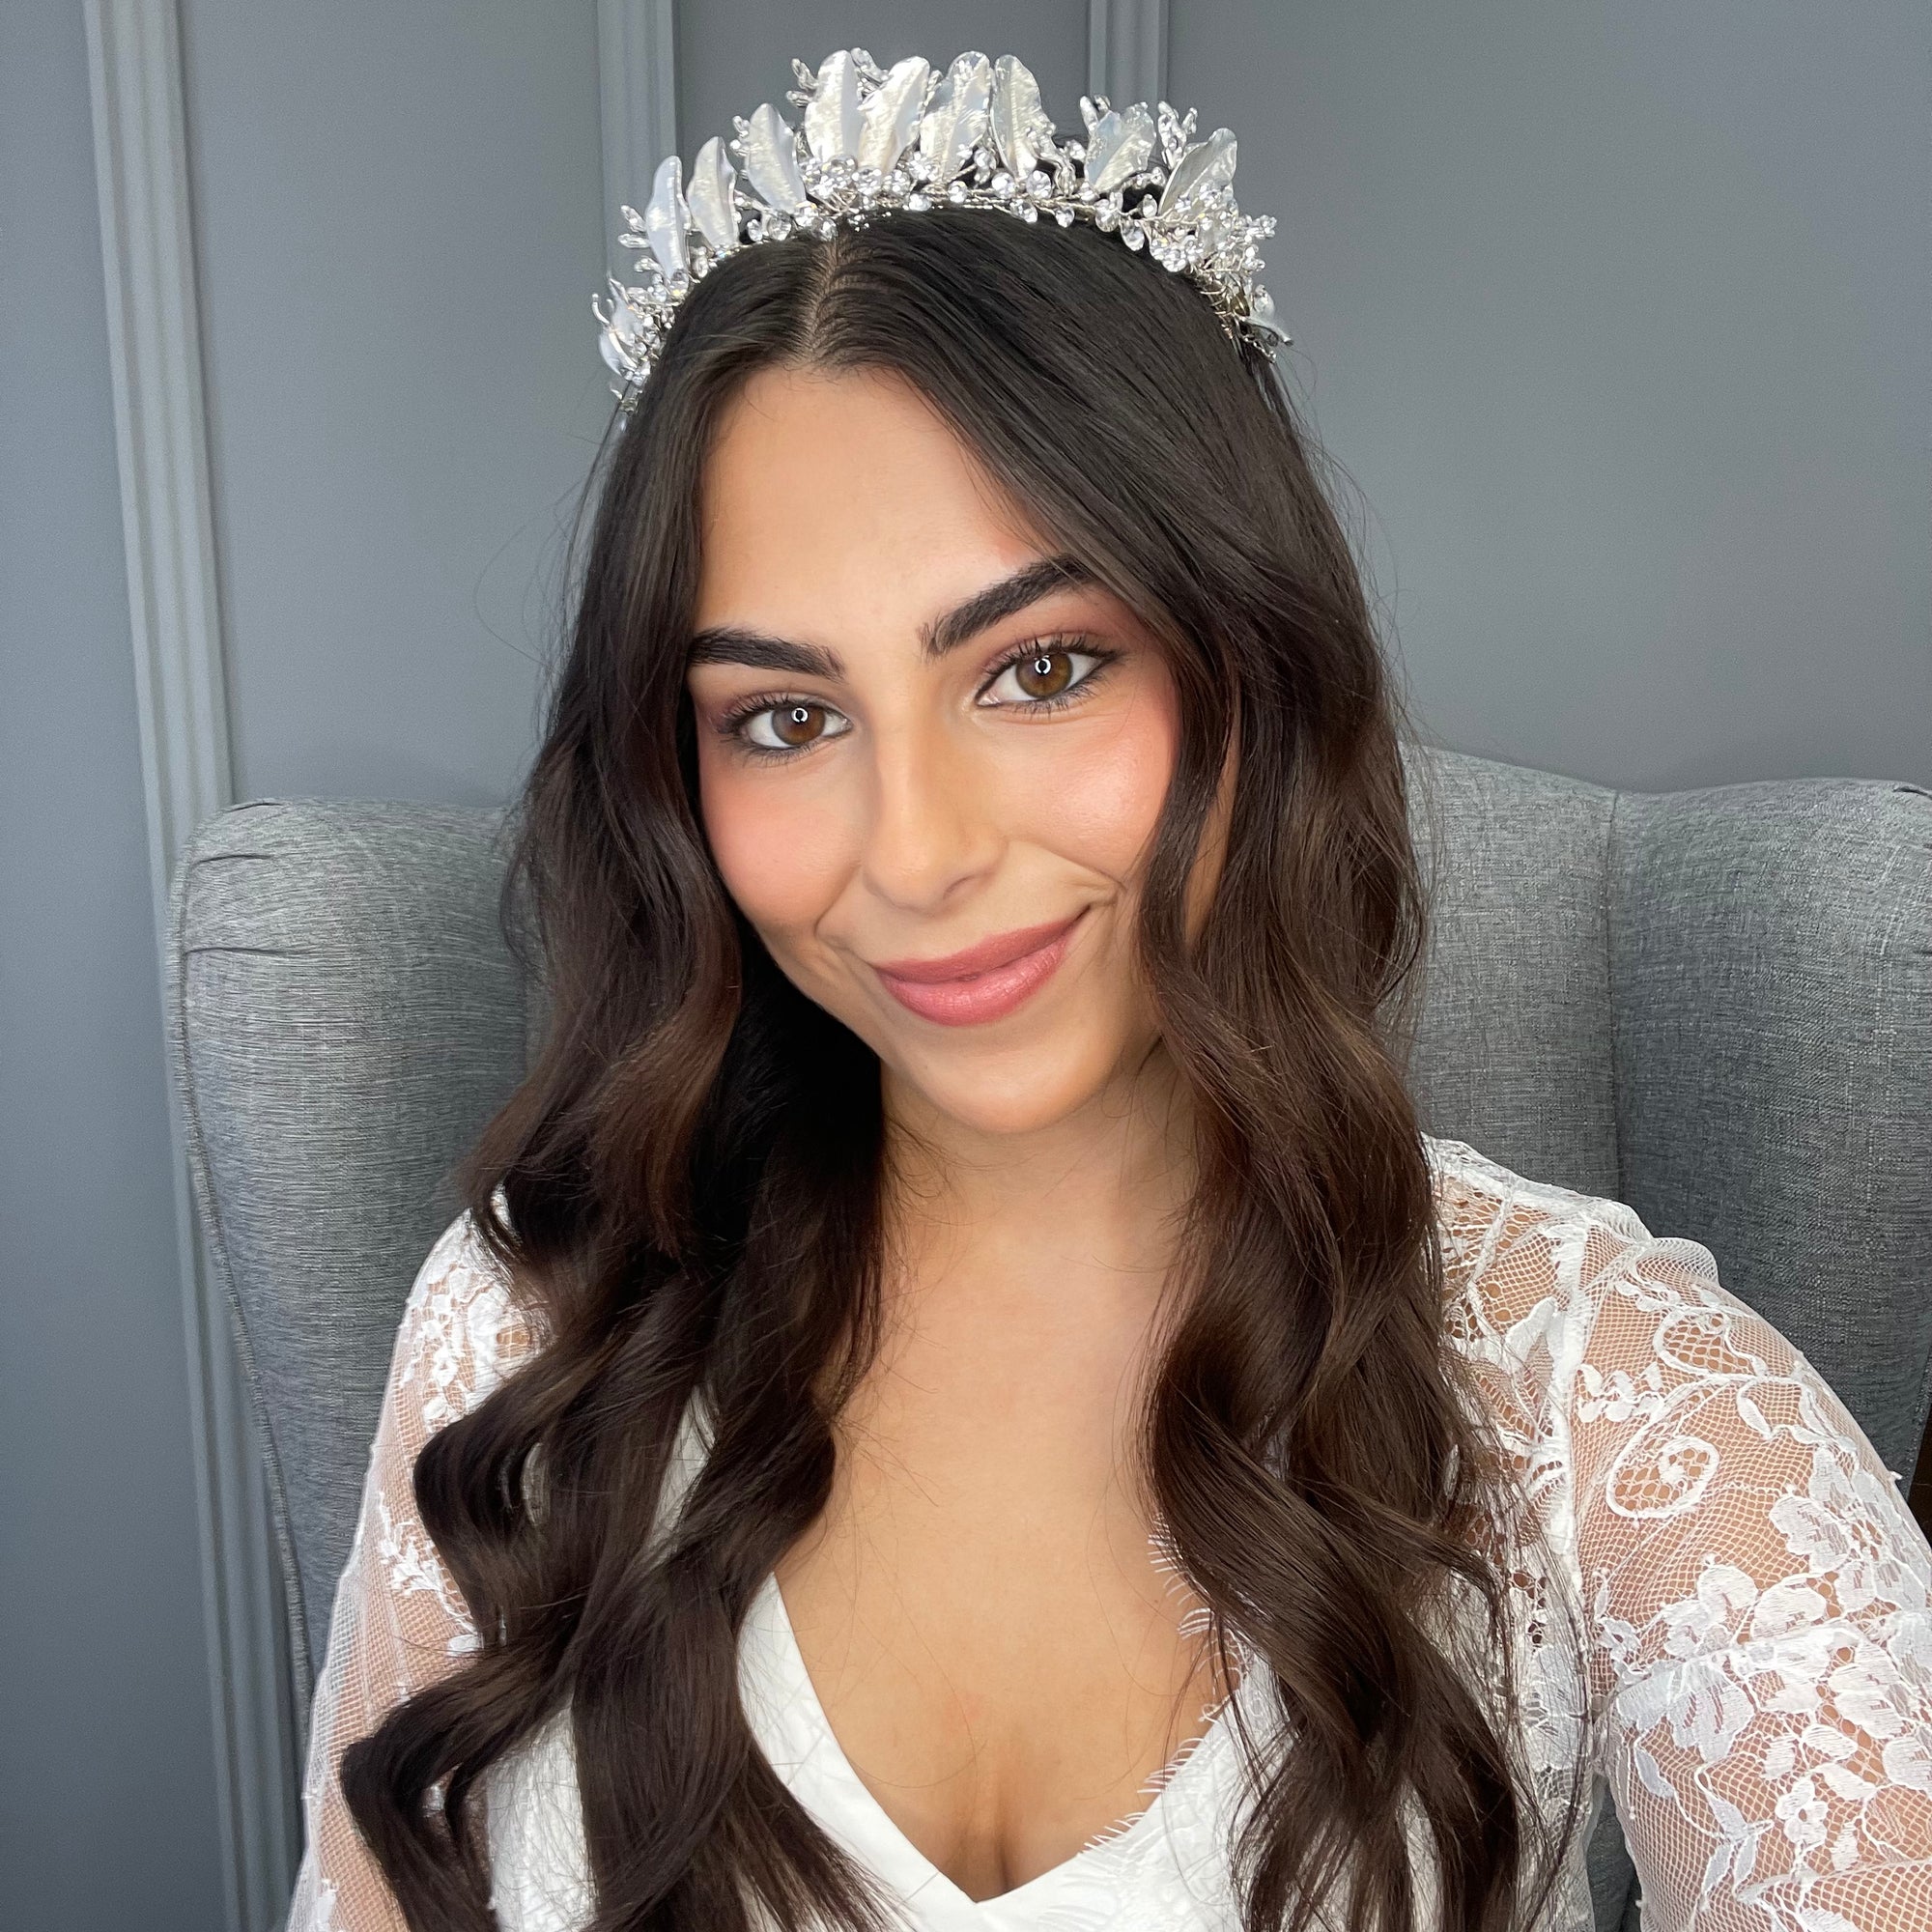 Gabriella Bridal Crown Hair Accessories - Tiara & Crown    